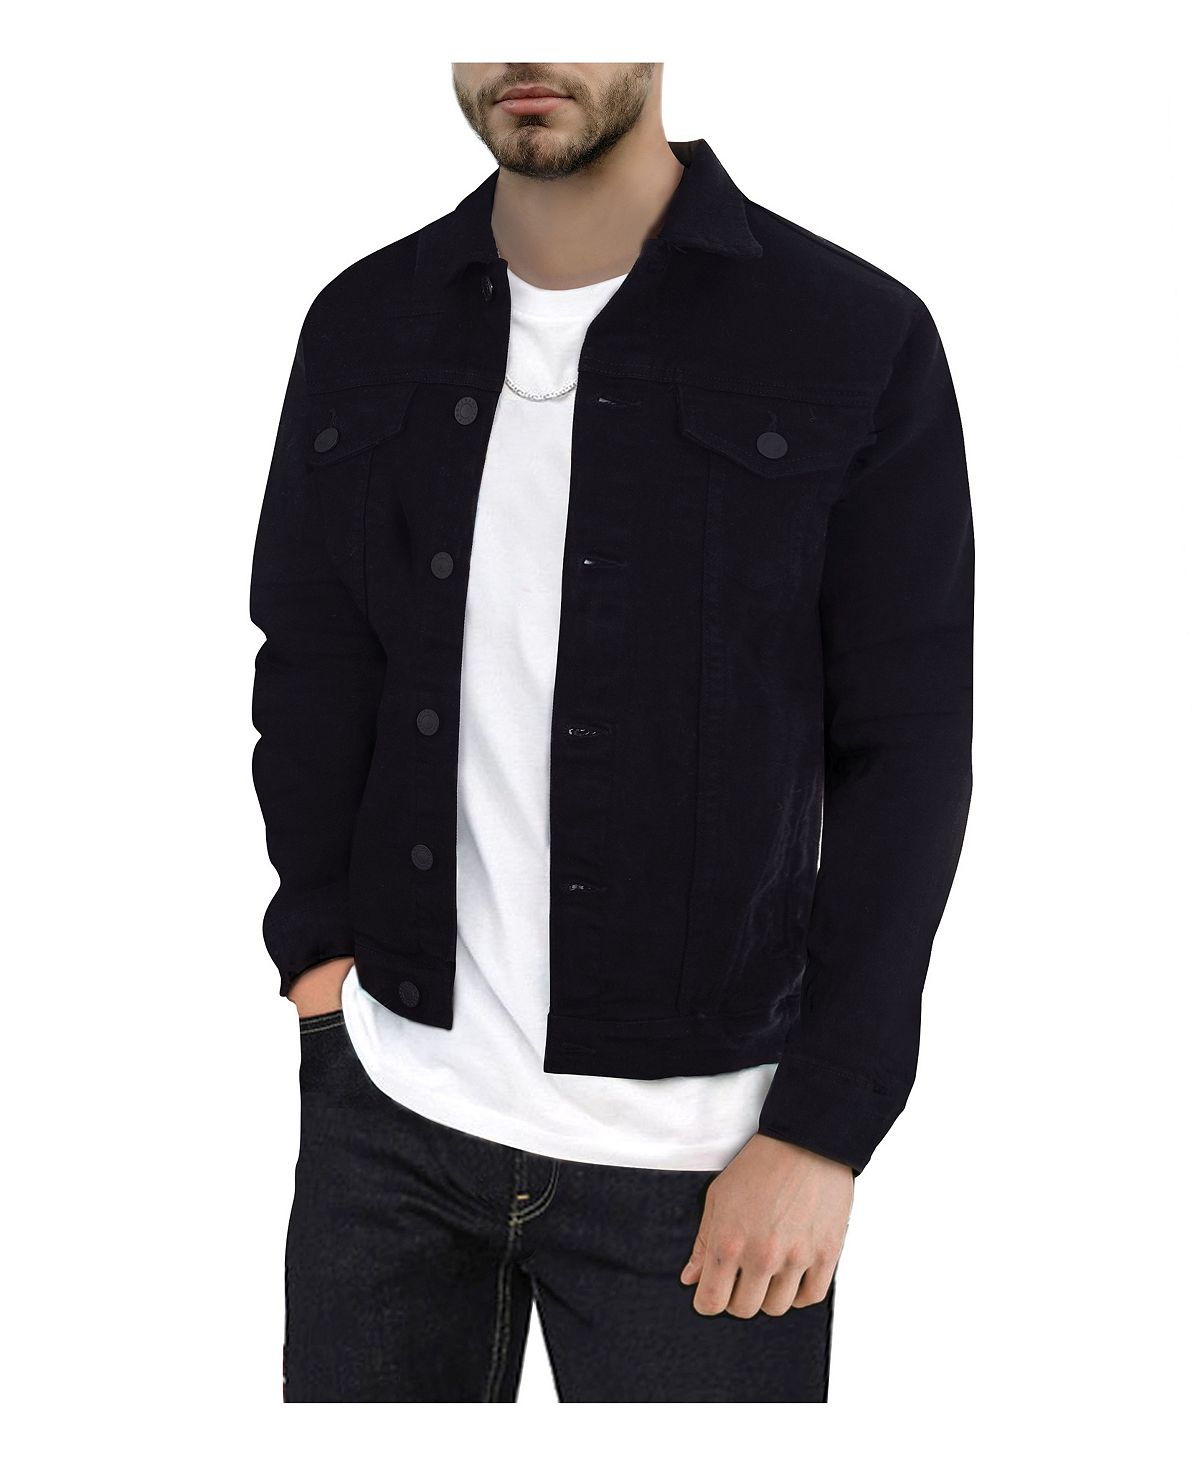 Мужская приталенная джинсовая куртка с эффектом потертости X-Ray новая джинсовая куртка мужская повседневная джинсовая куртка синяя приталенная ветровка весна осень